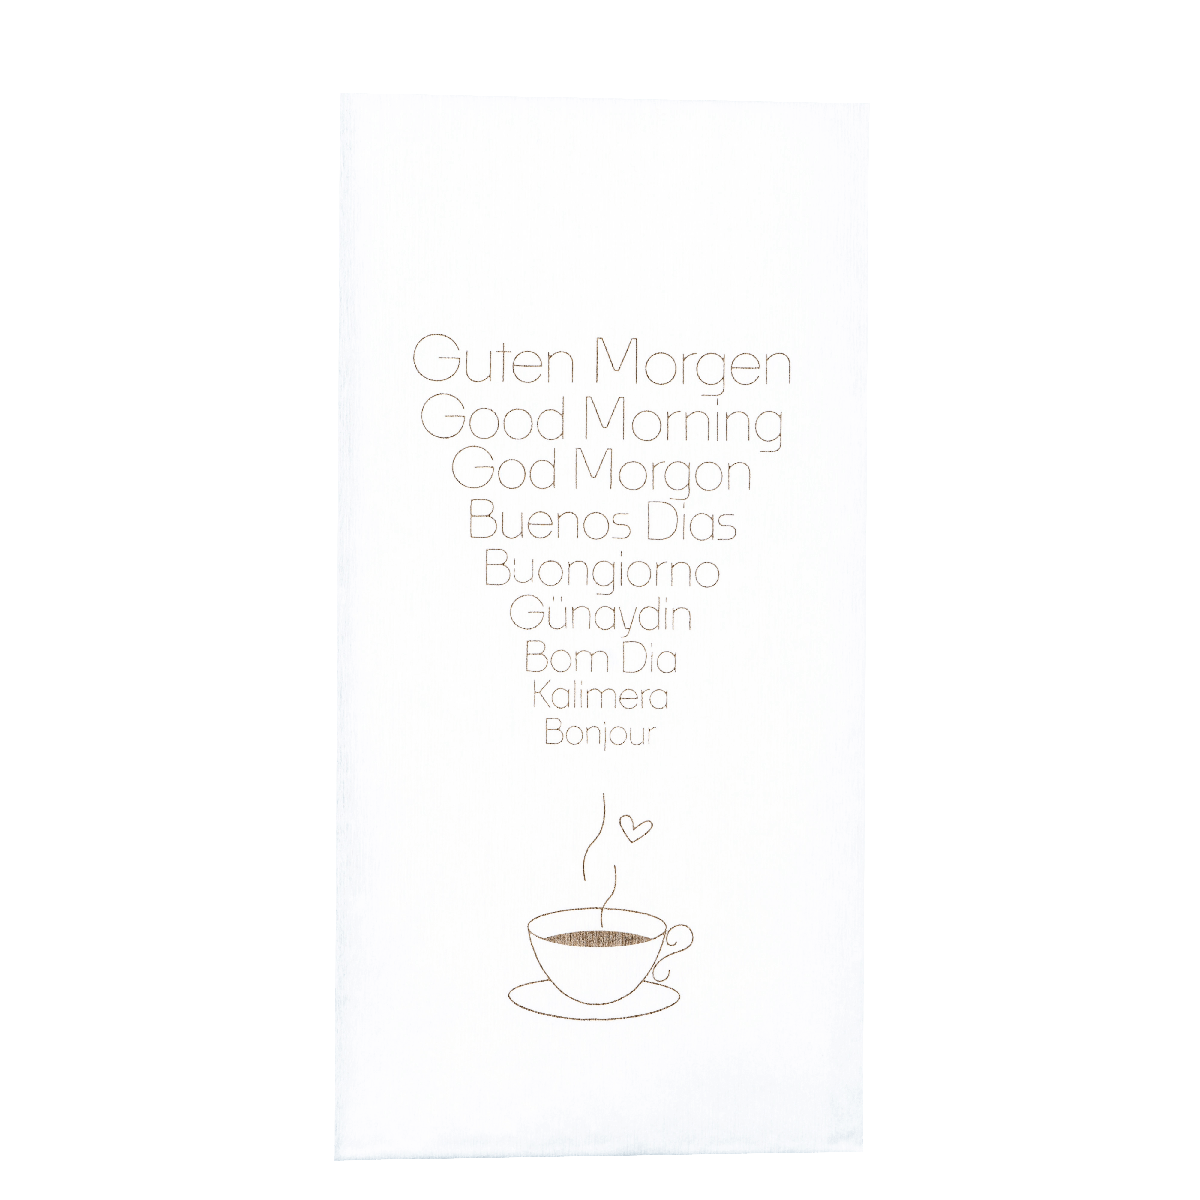 stoffähnliche Spunlaid Serviette 30x40 cm , 1/6 Falz mit Motiv: "GUTEN MORGEN" in vielen Sprachen 